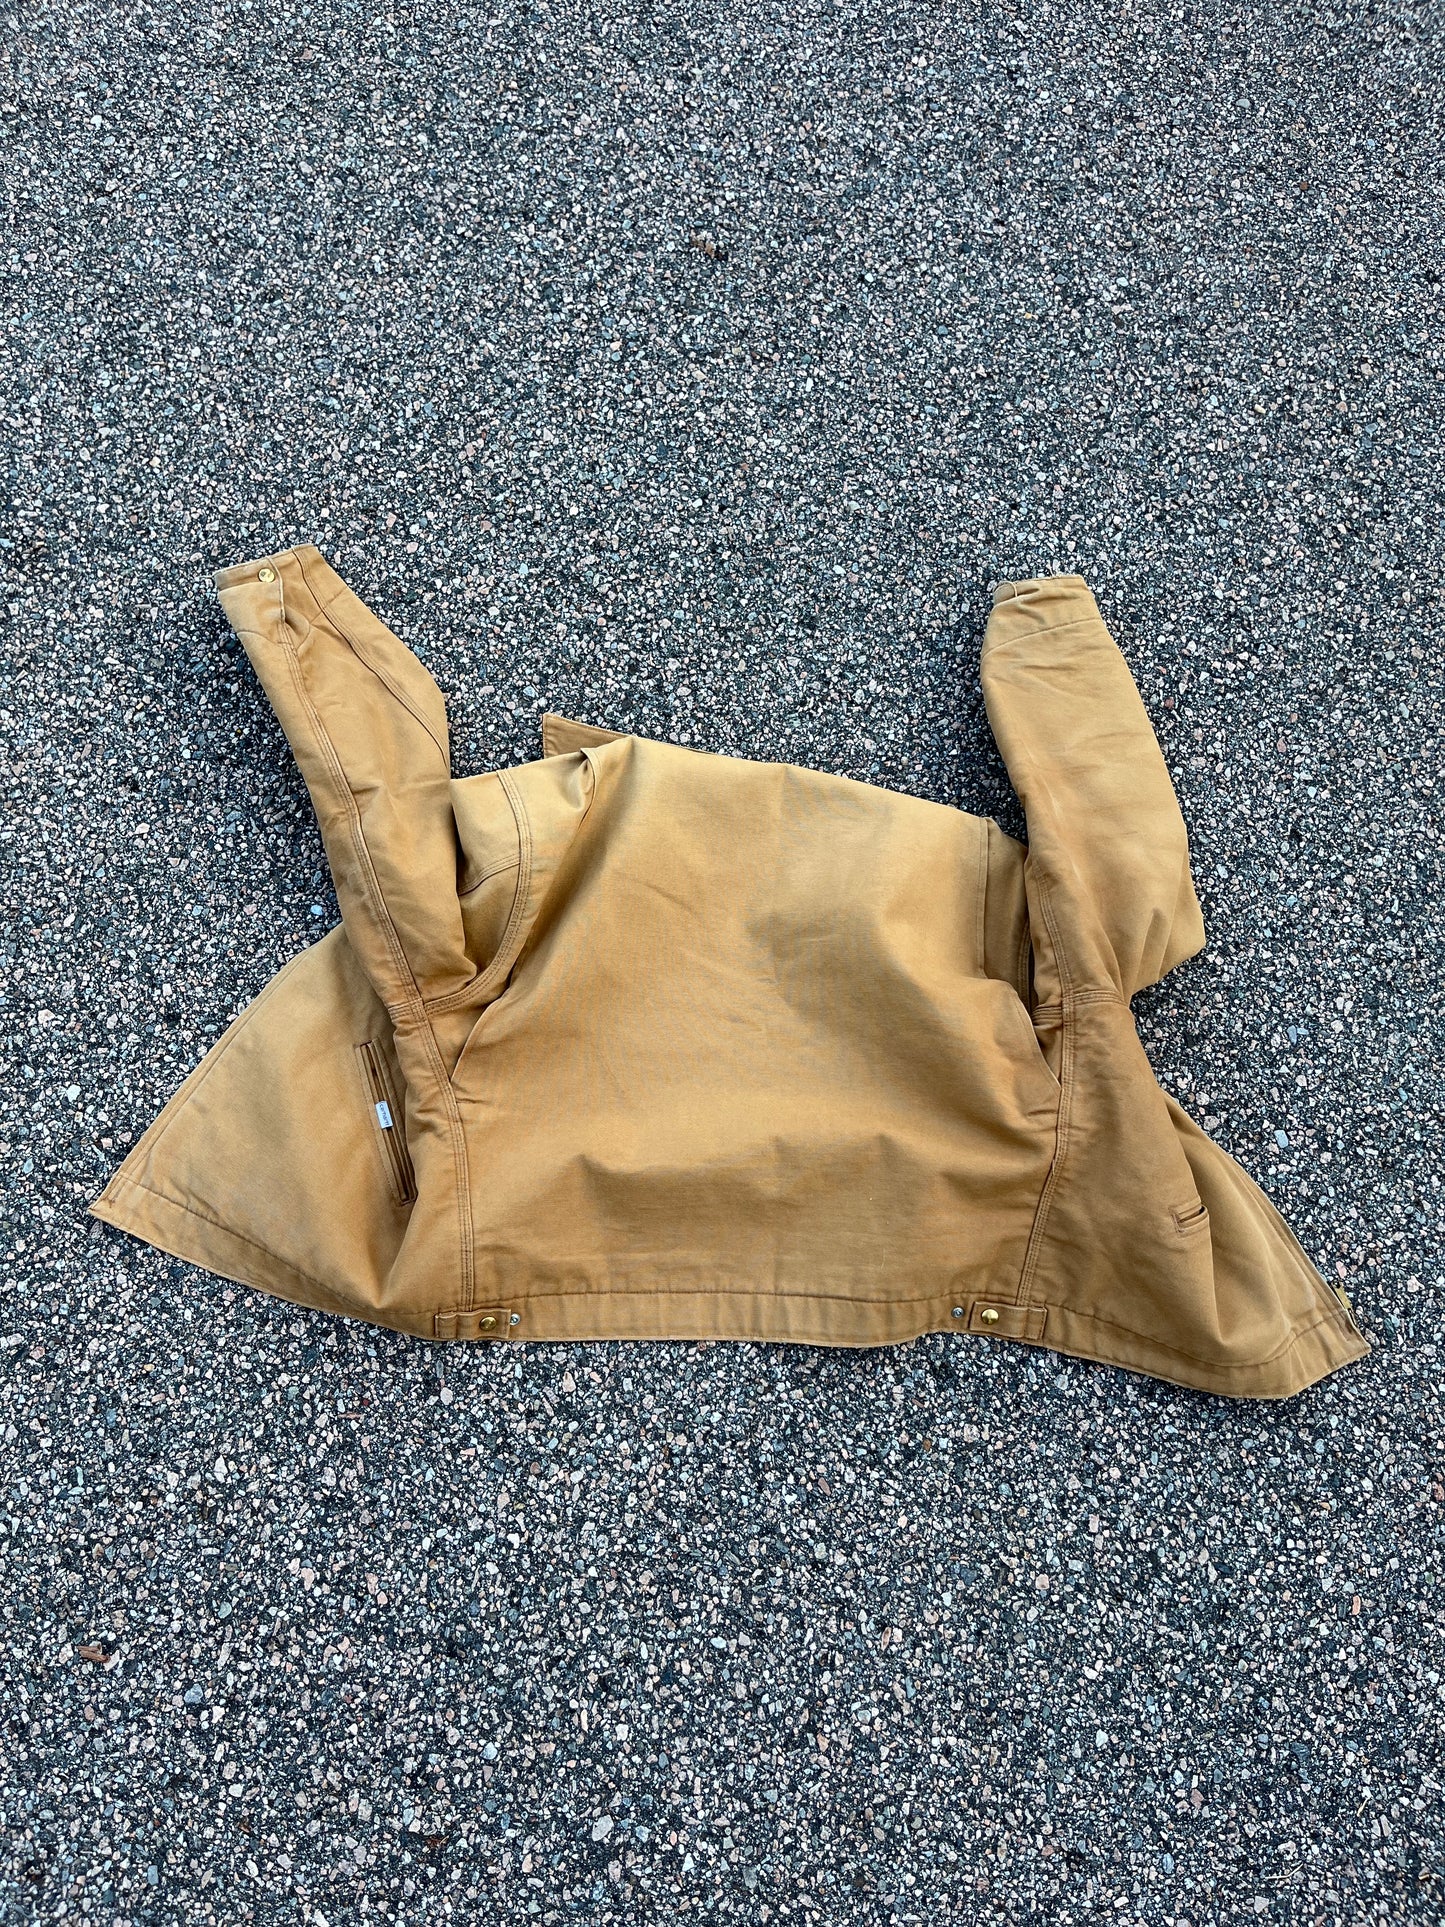 80’s Faded Tan Carhartt Detroit Jacket - Boxy Large